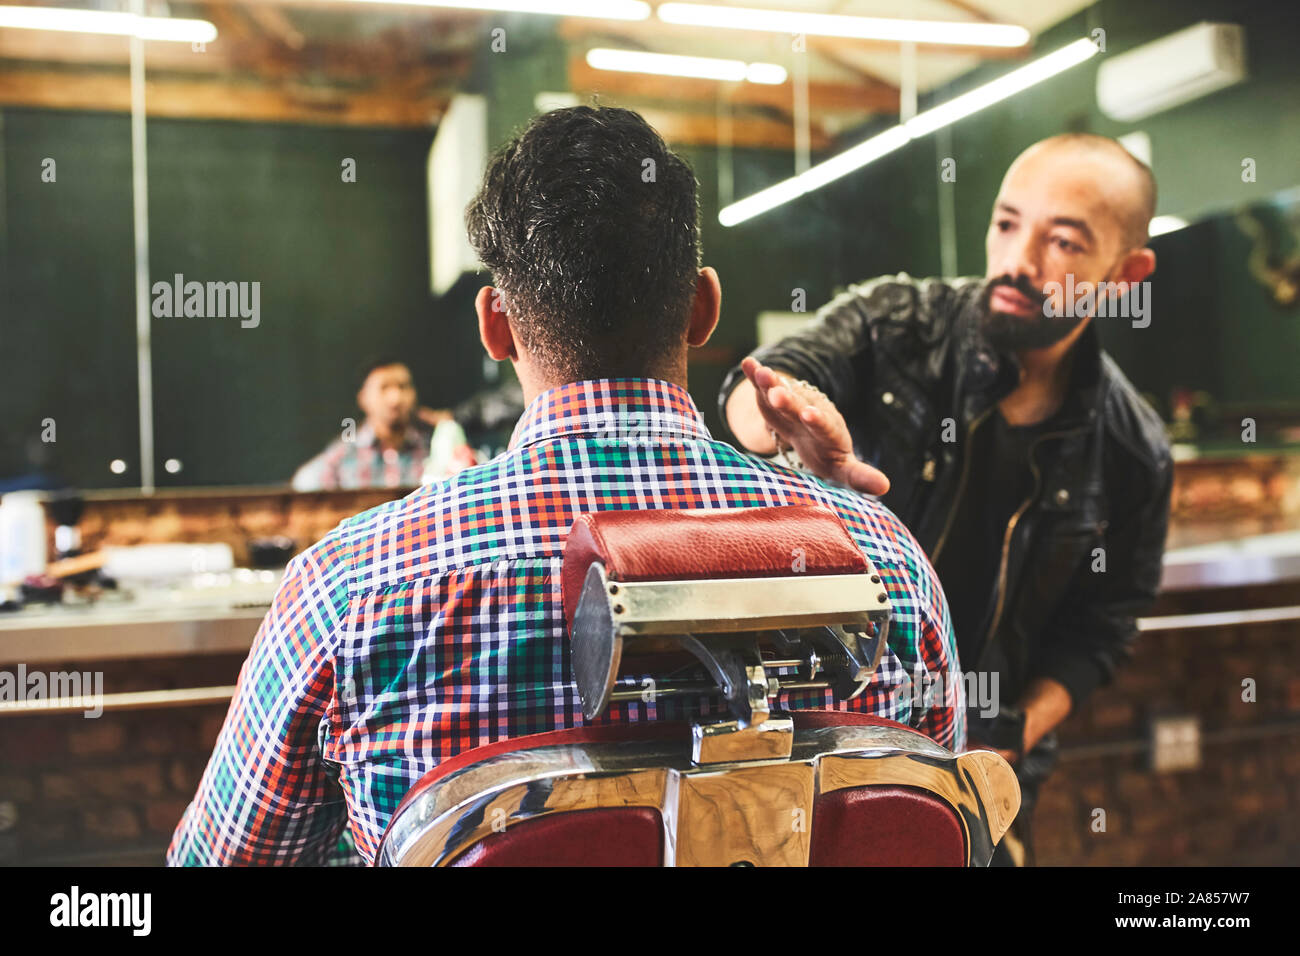 Salon de coiffure masculin contrôle décote de client dans un salon de barbier Banque D'Images